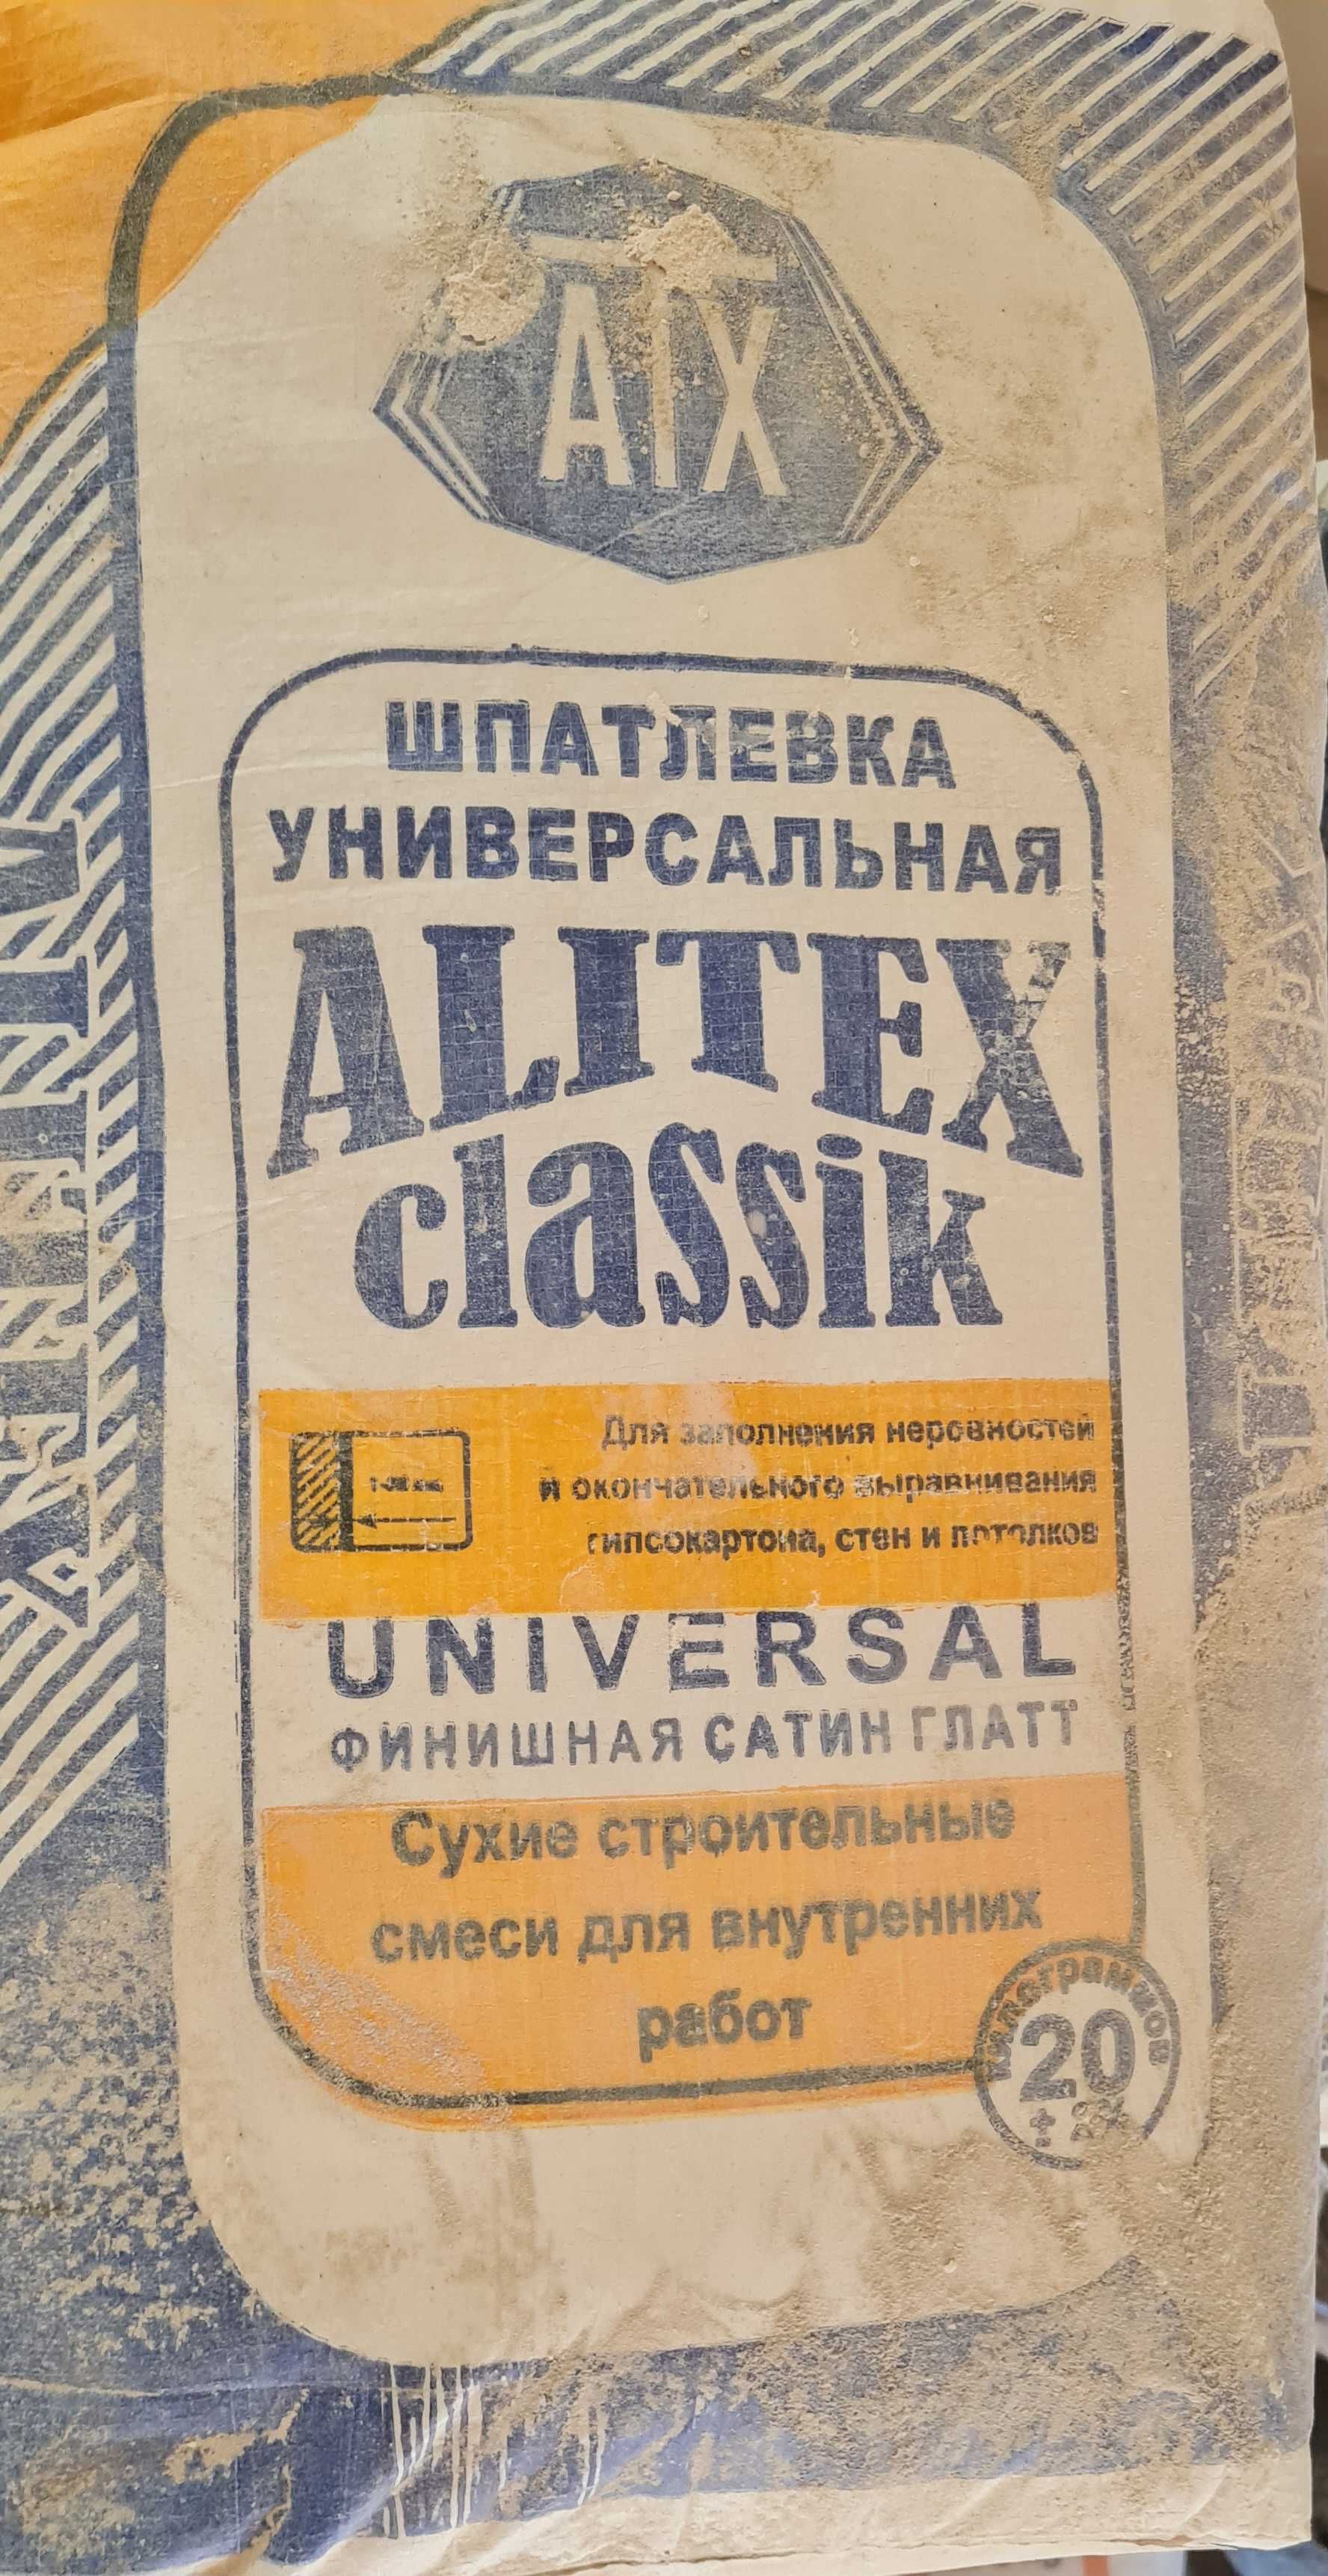 Шпаклёвка Alitex classic universal